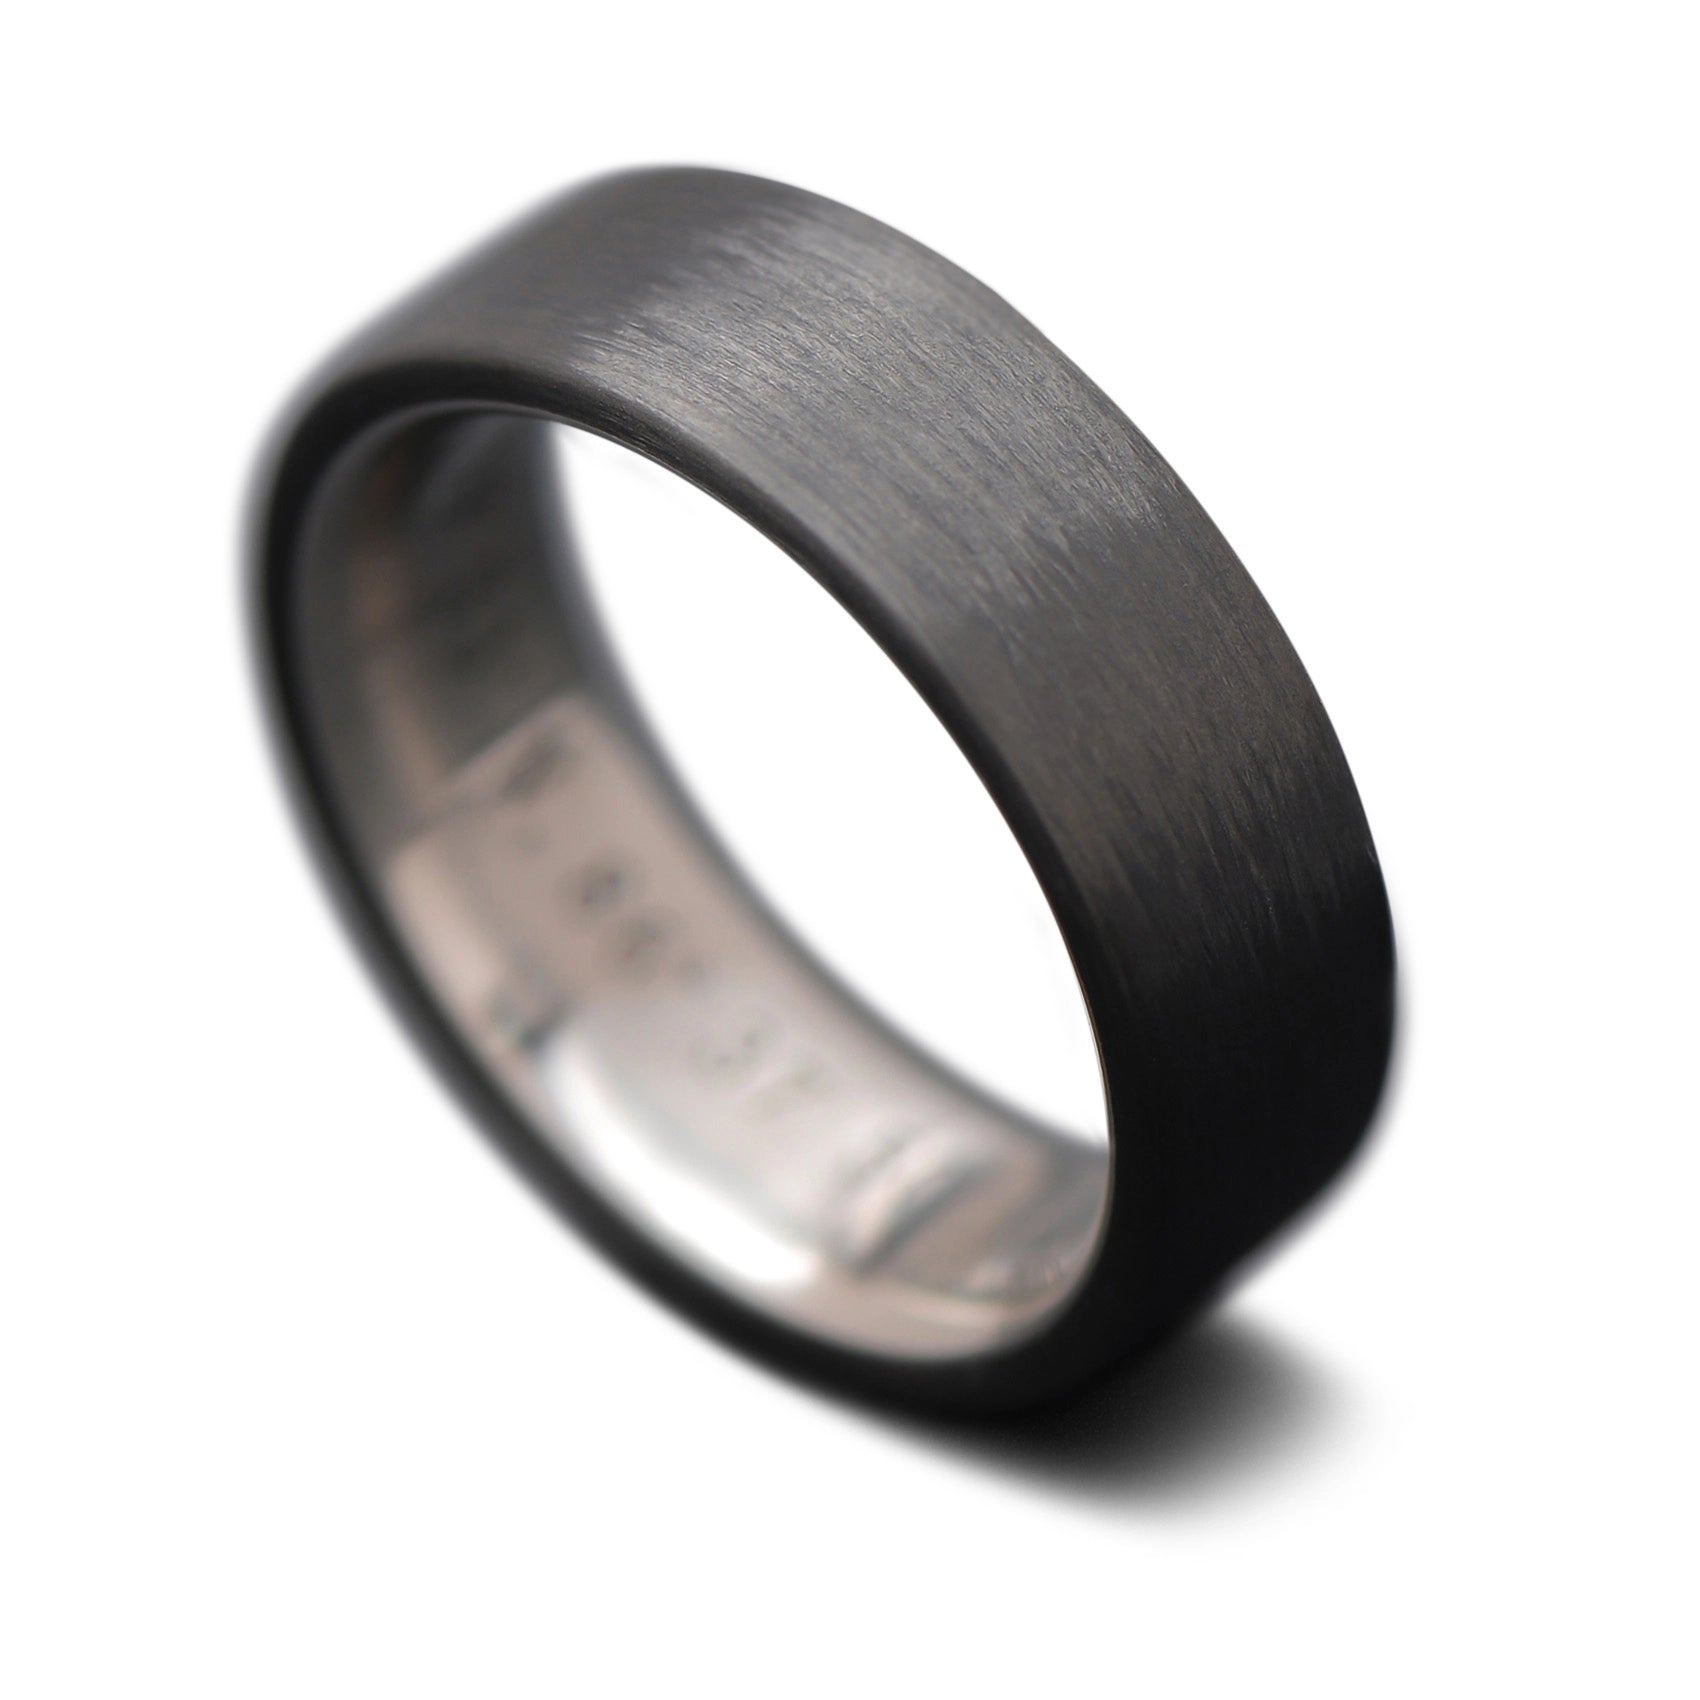 CarbonUni Core Ring with Titanium inner sleeve, 7mm -THE QUANTUM